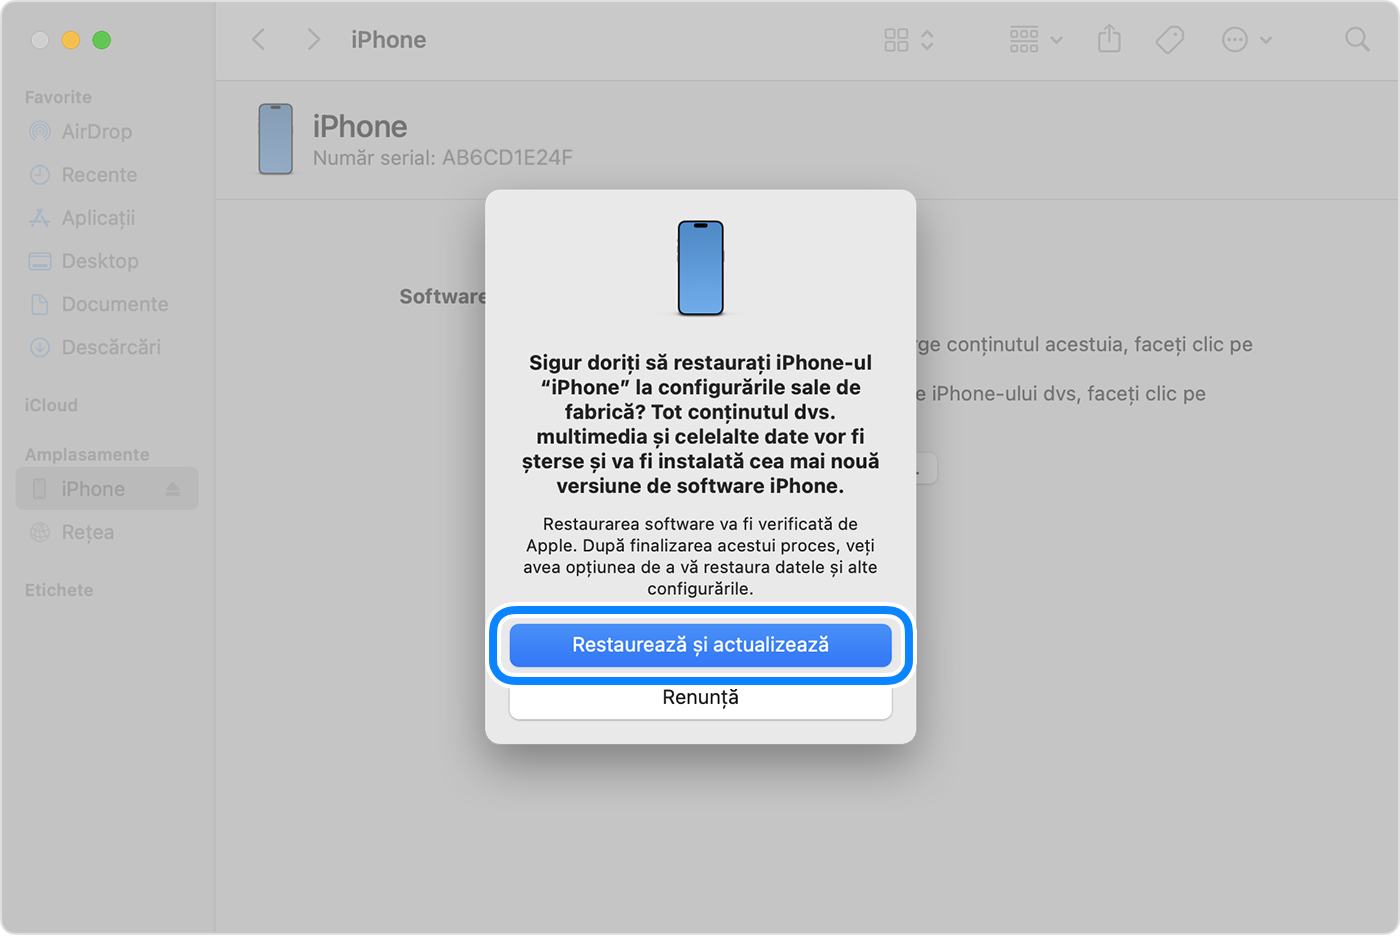 Pentru a restaura și a actualiza dispozitivul iPhone cu ajutorul computerului, trebuie să atingi Restaurează și actualizează pentru a confirma.